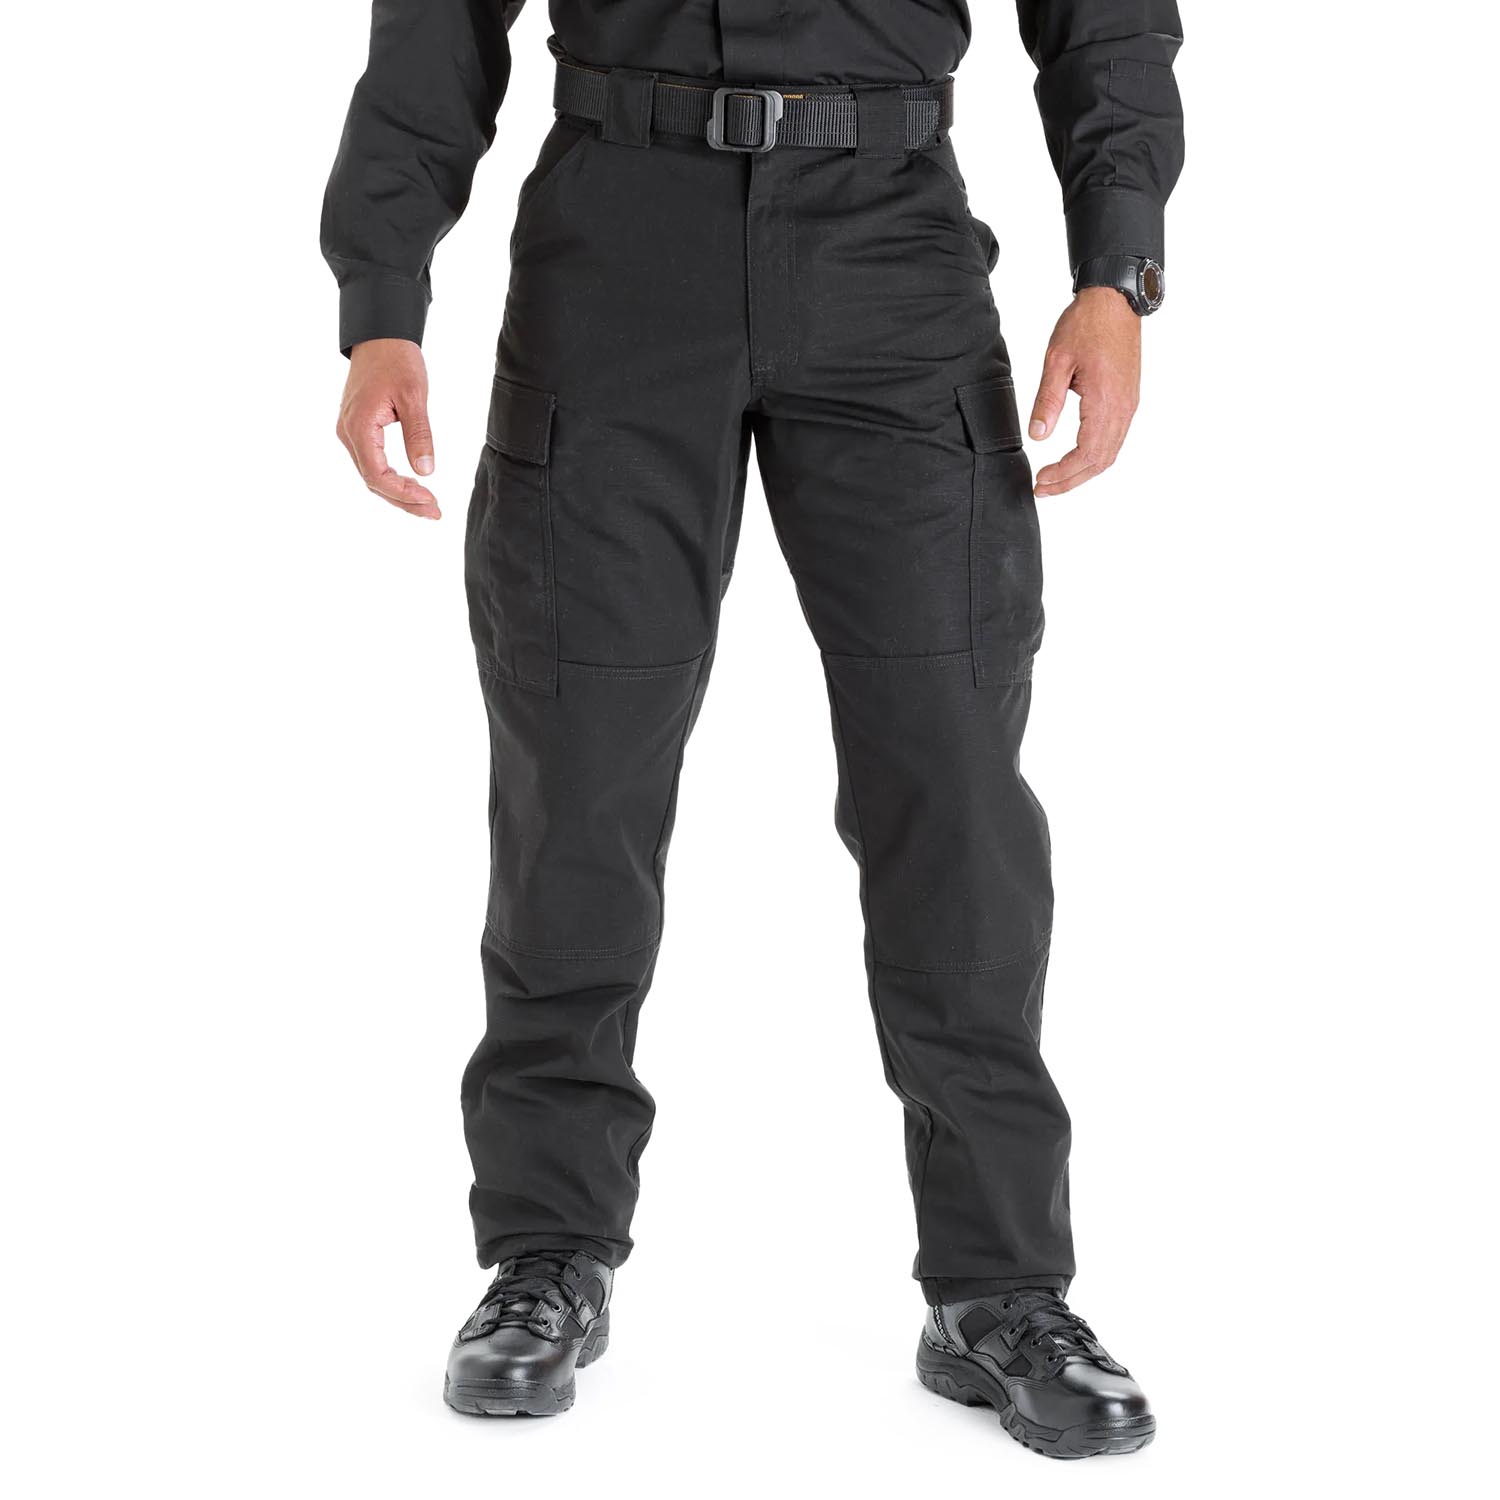 5.11 Tactical TDU Ripstop Pants - Black, Medium